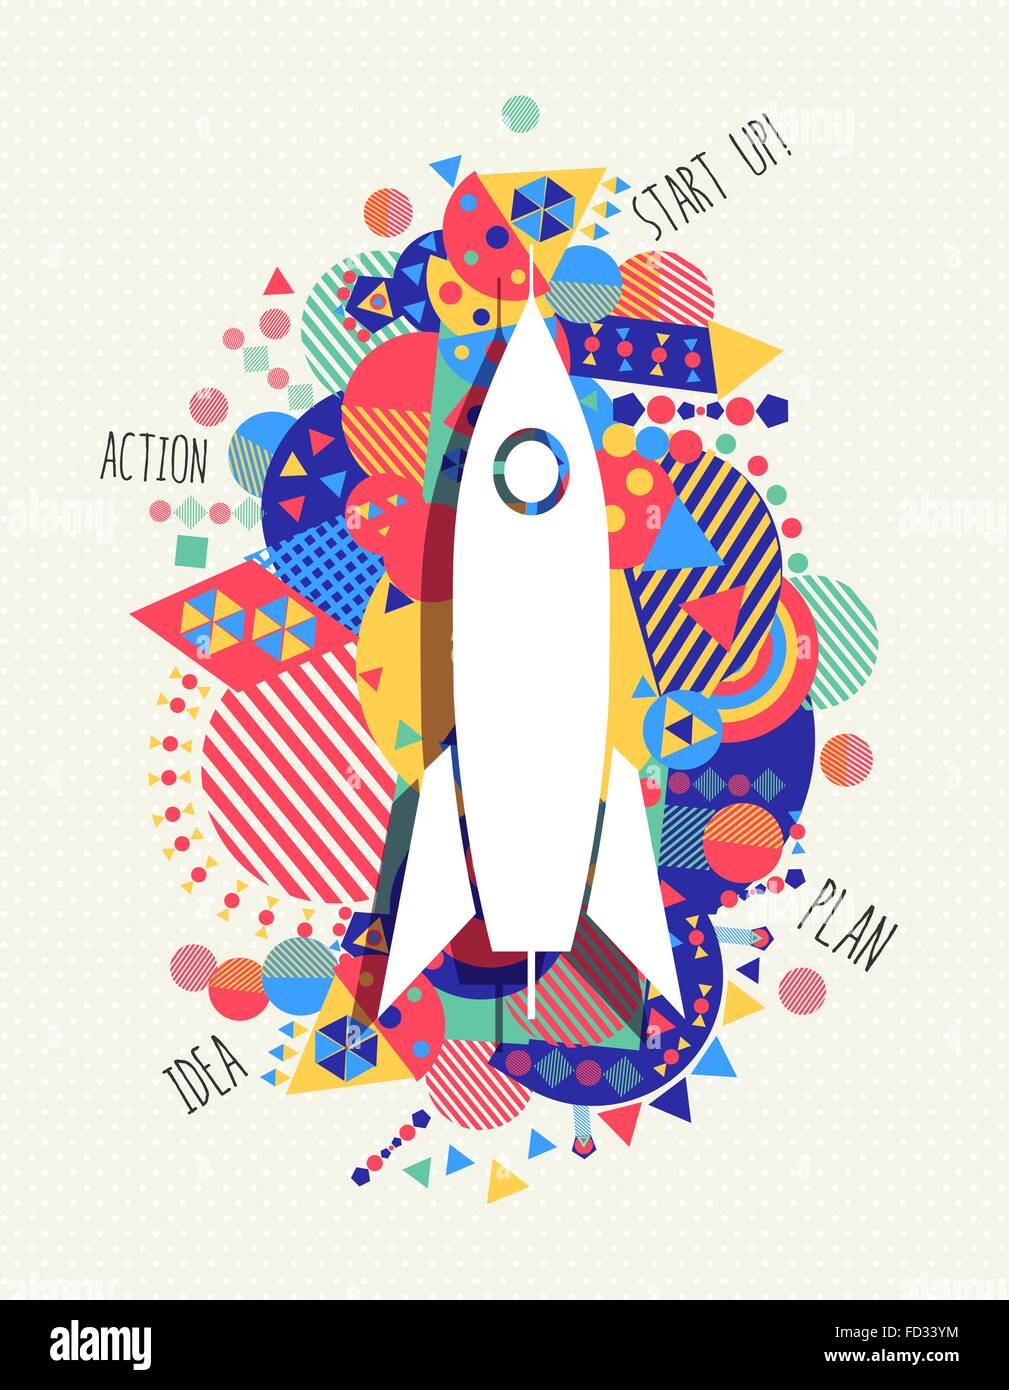 L'icône de fusée spatiale de démarrage d'entreprise, concept design avec des couleurs vibrantes décoration géométrique. Vecteur EPS10. Illustration de Vecteur